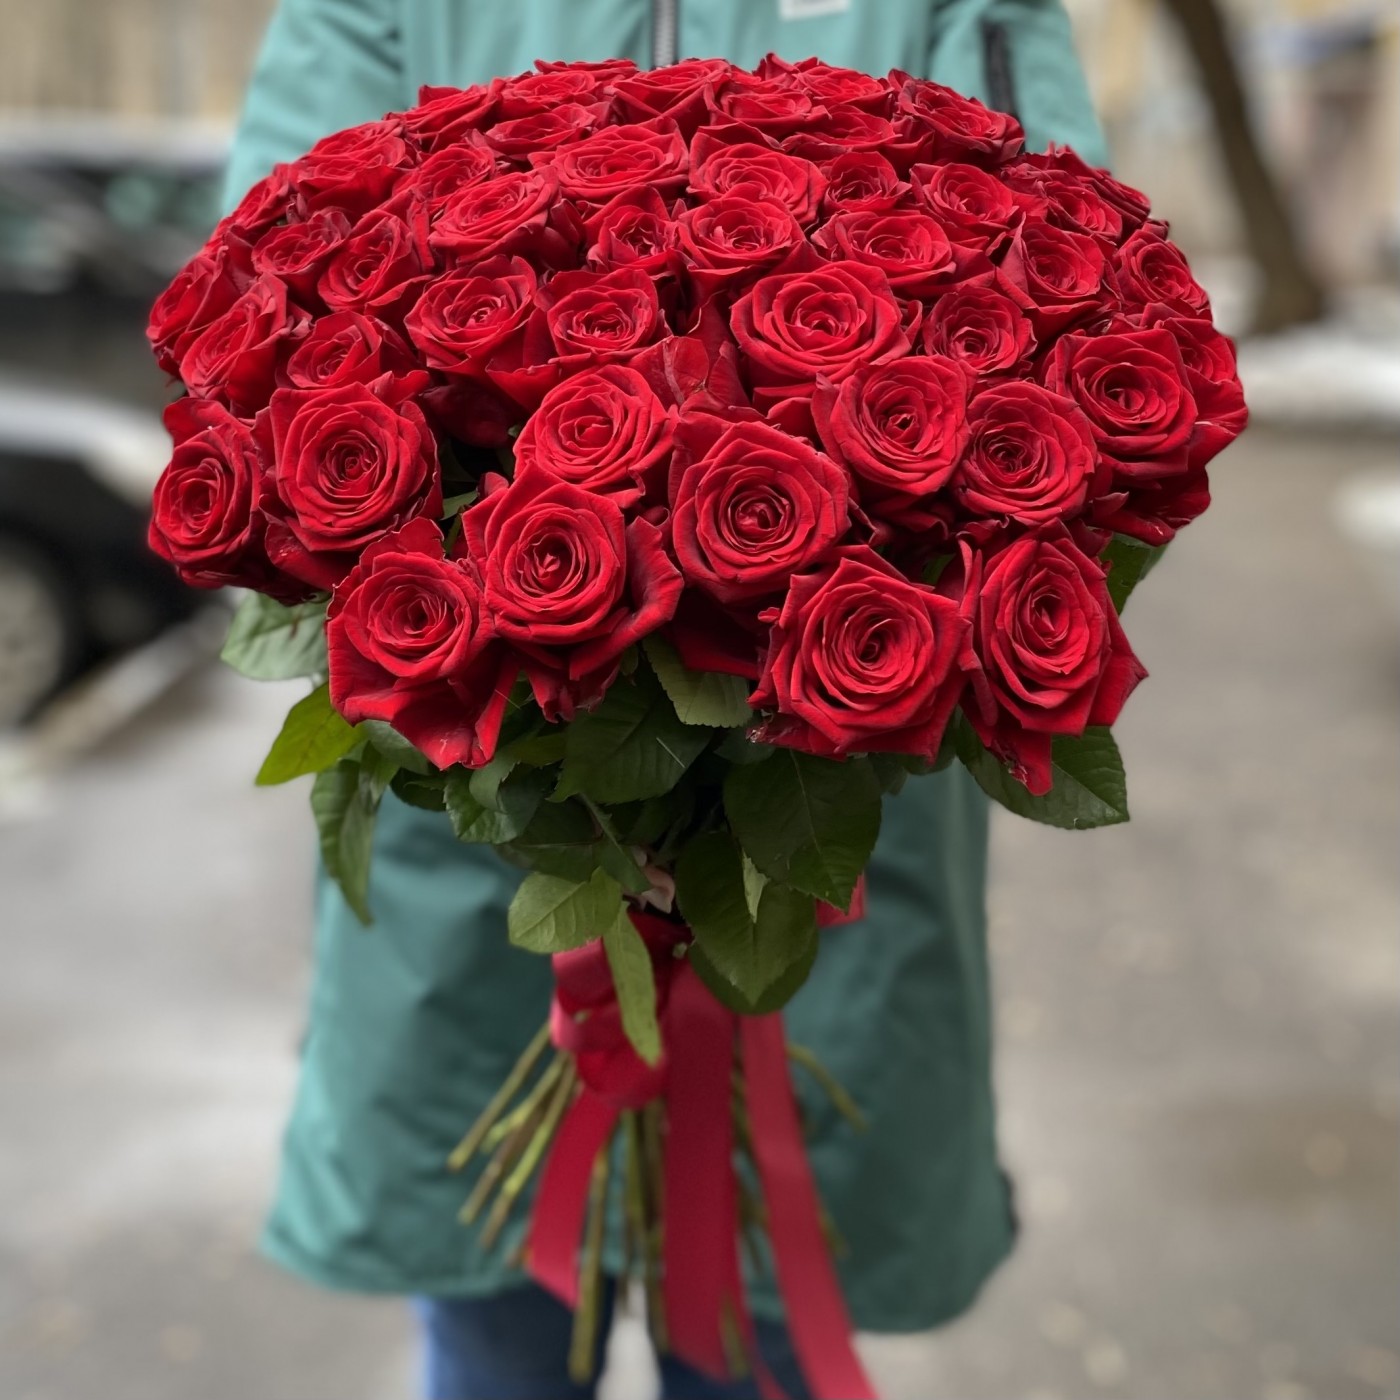 Где недорого заказать цветы с доставкой пьедестал для цветов купить москва недорого